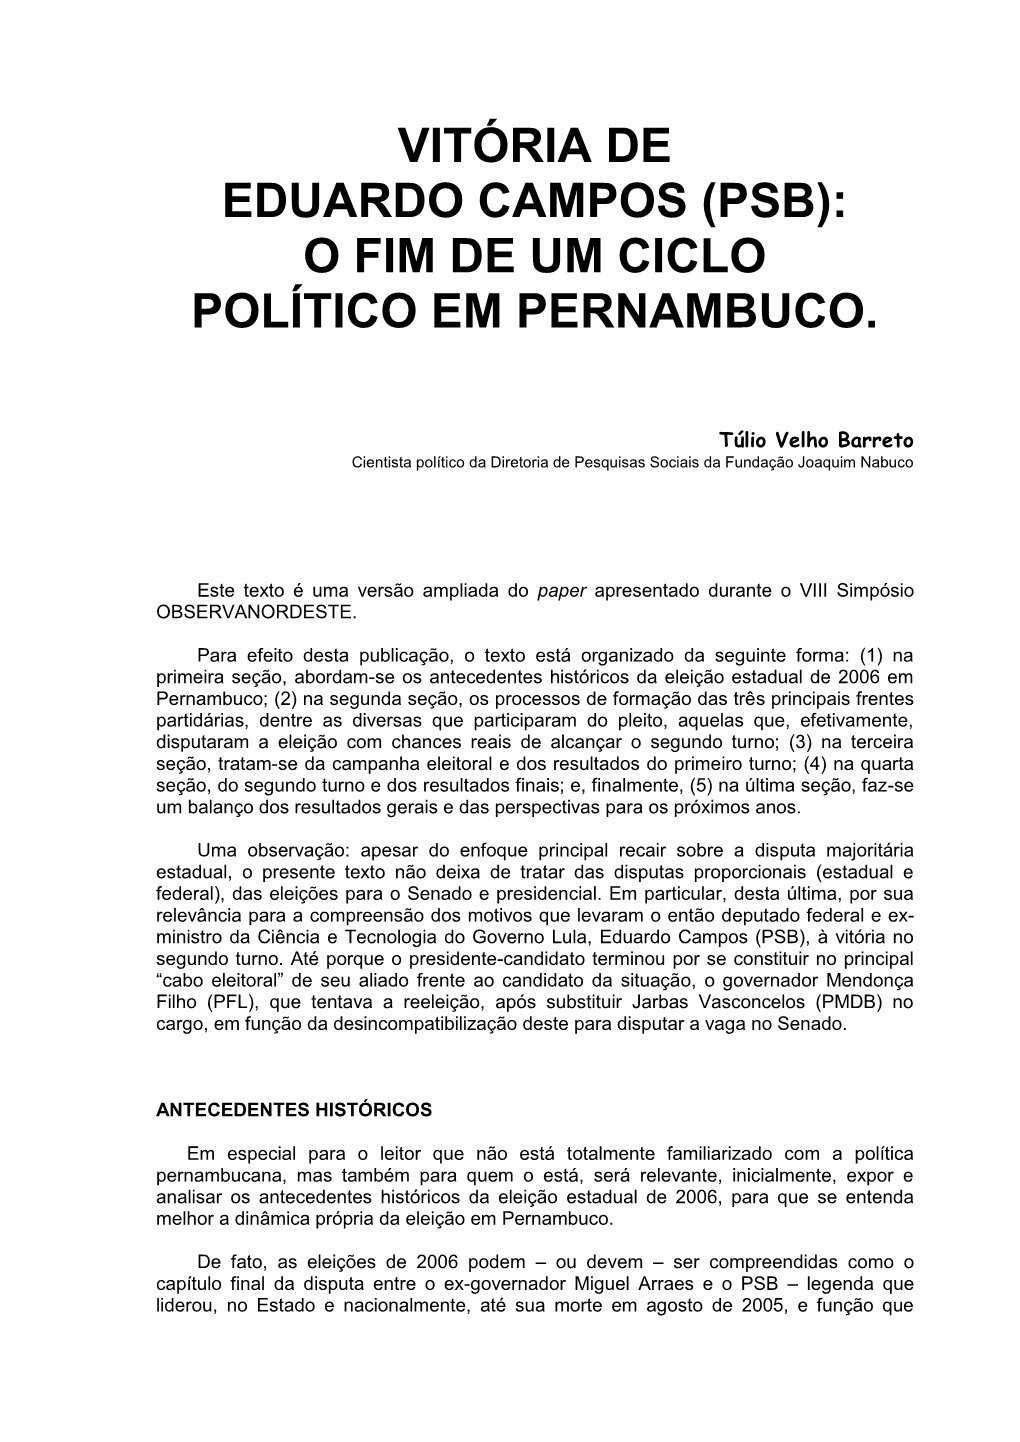 A Vitória De Eduardo Campos (PSB) Em Pernambuco